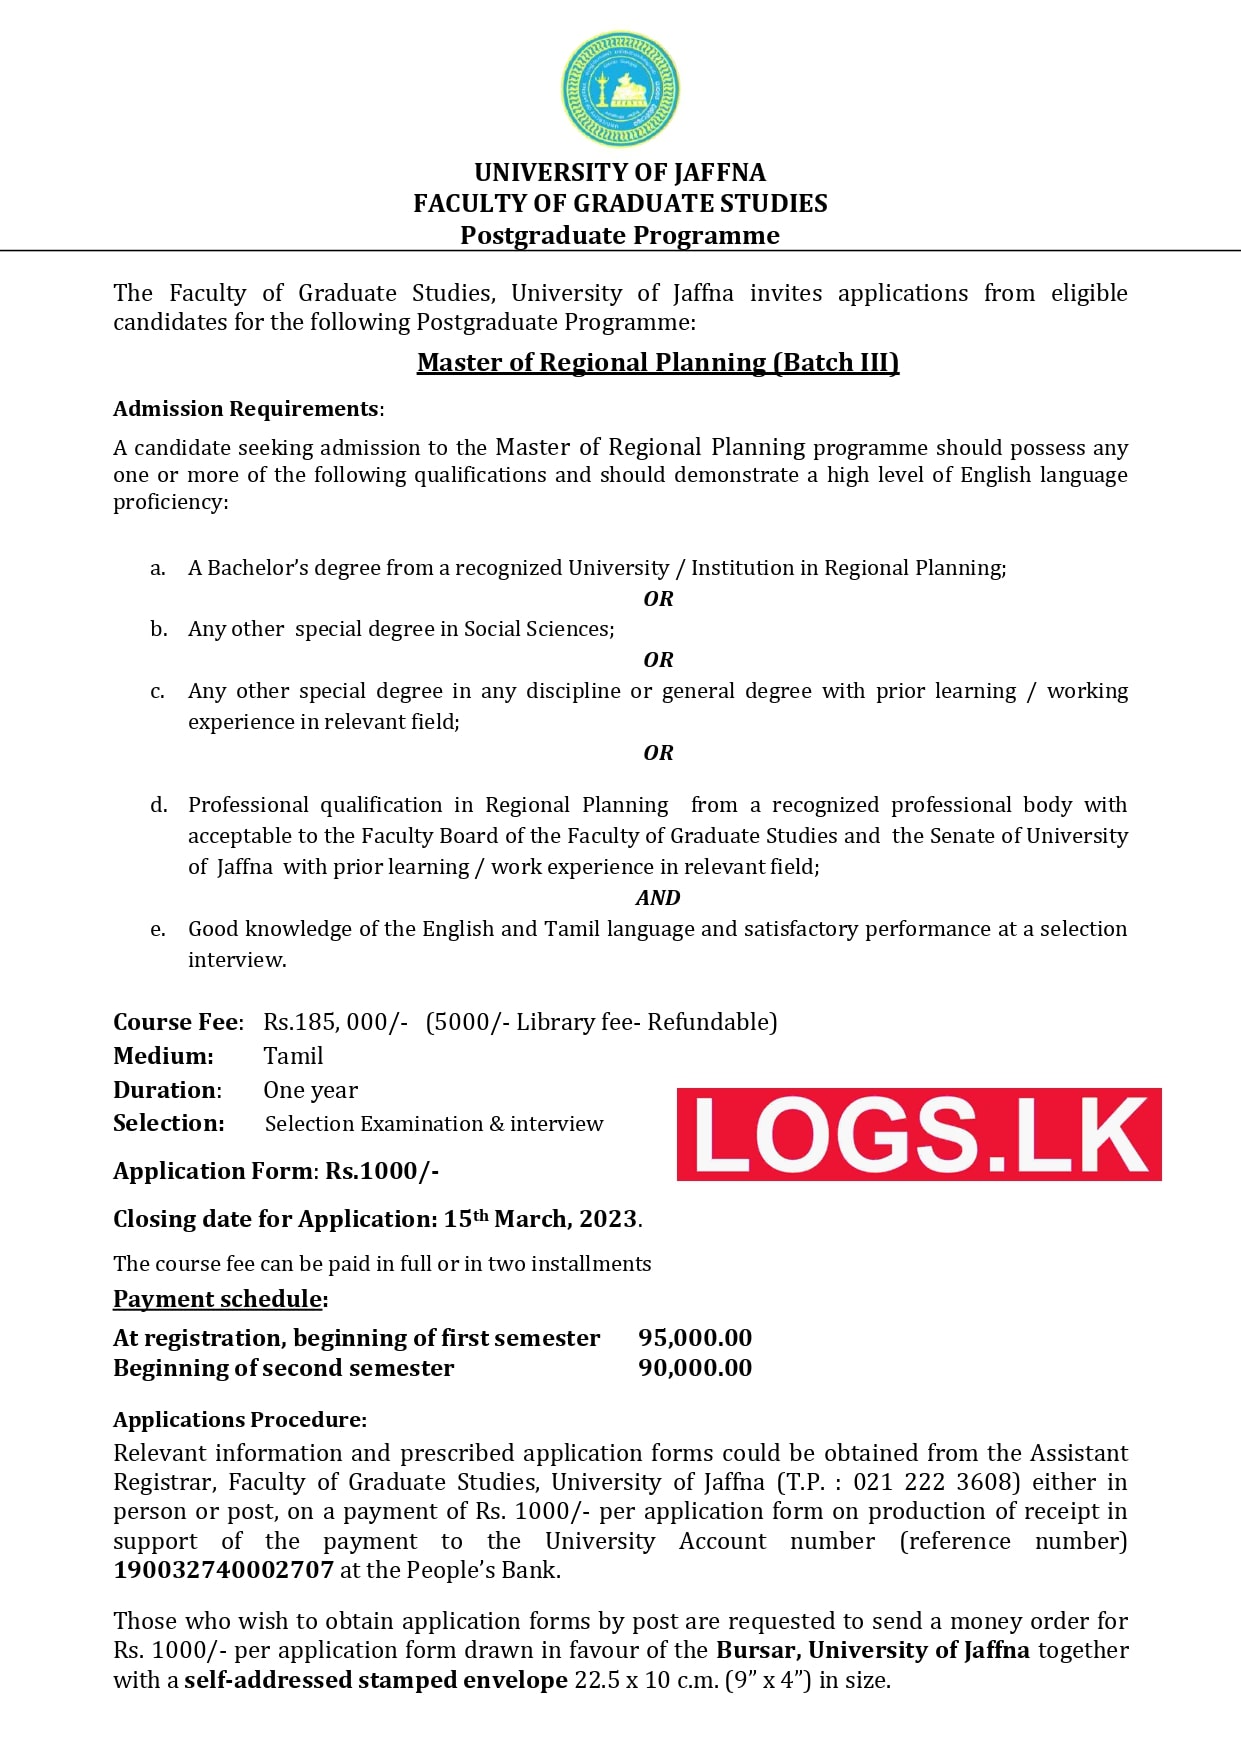 Master of Regional Planning 2023 - University of Jaffna Application Form, Details Download